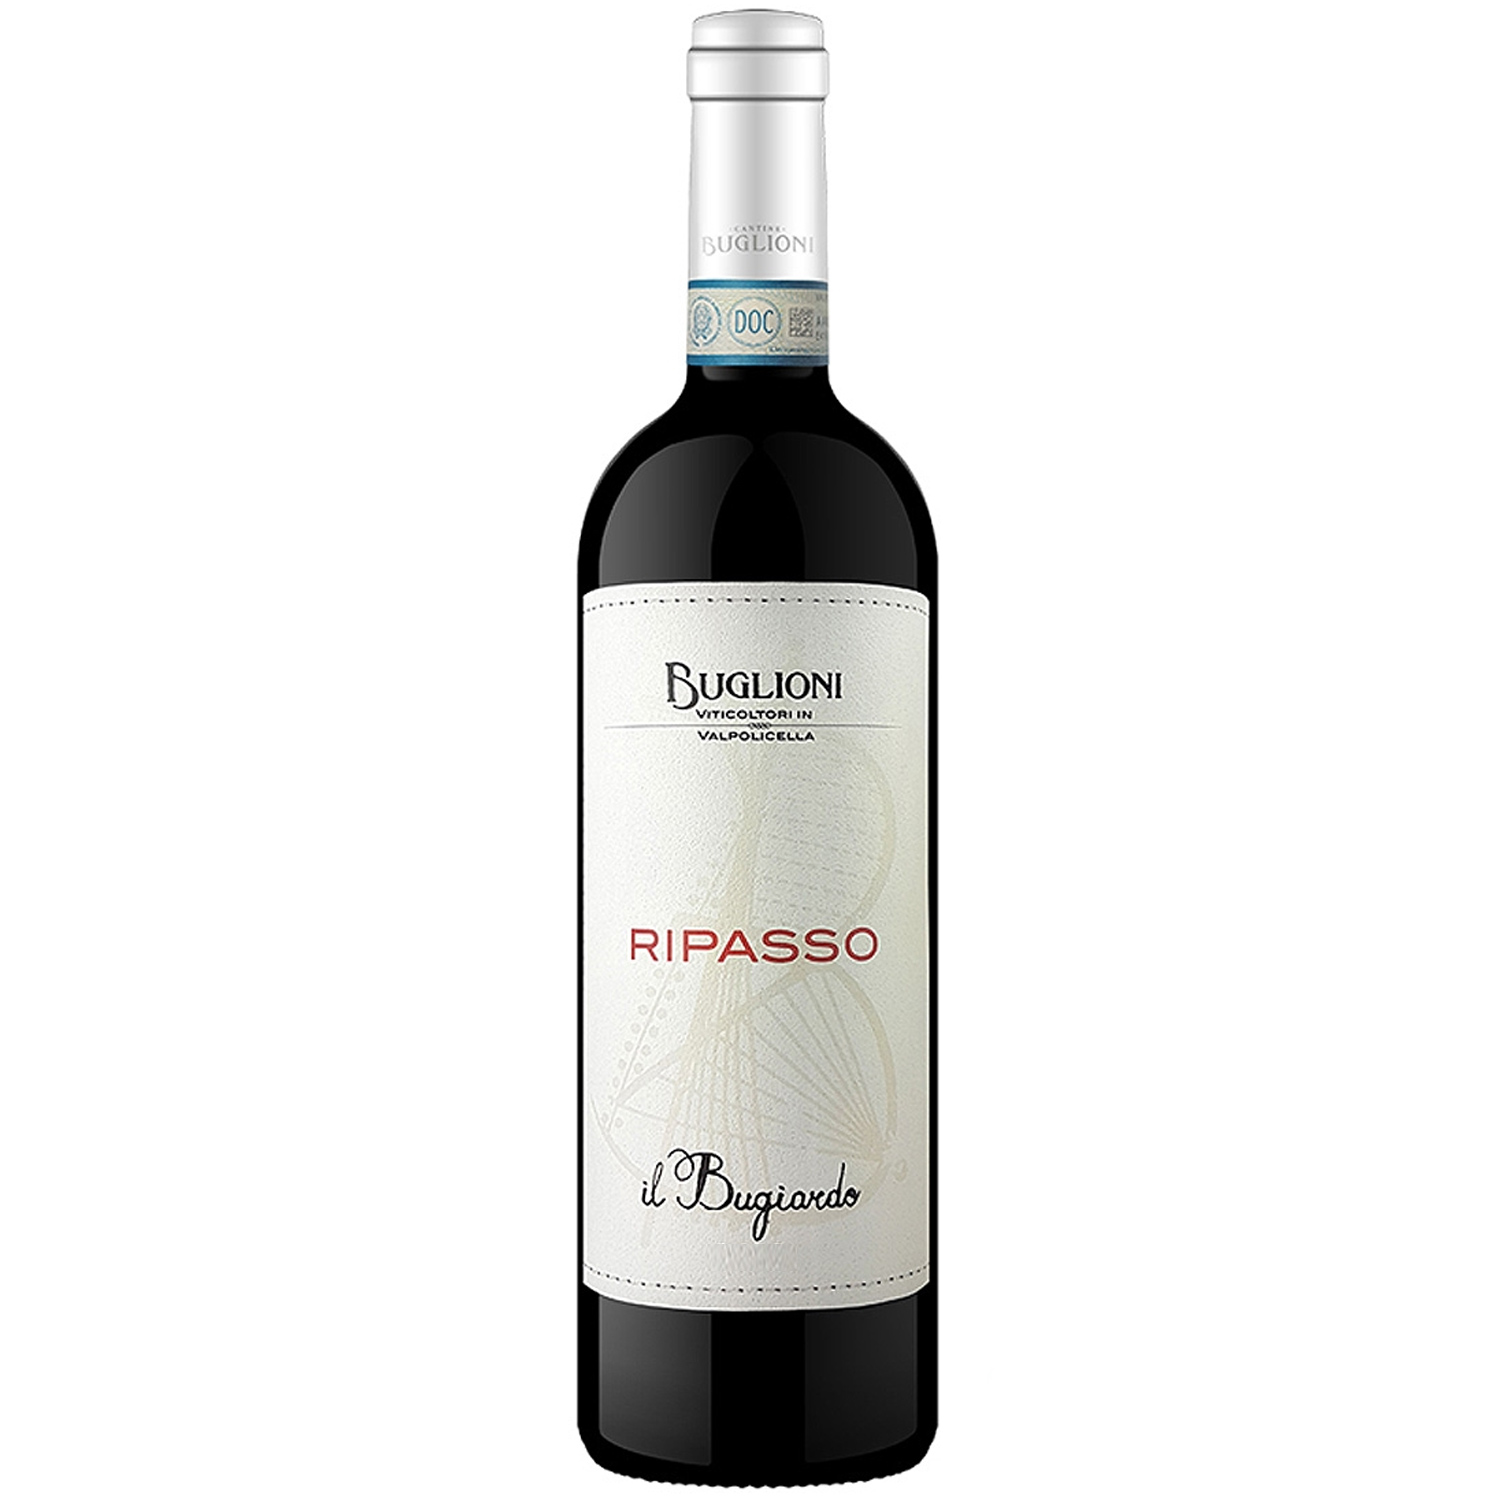 Italienischer Rotwein Buglioni 2018 Il Nobile Bugiardo | Vinum Ripasso